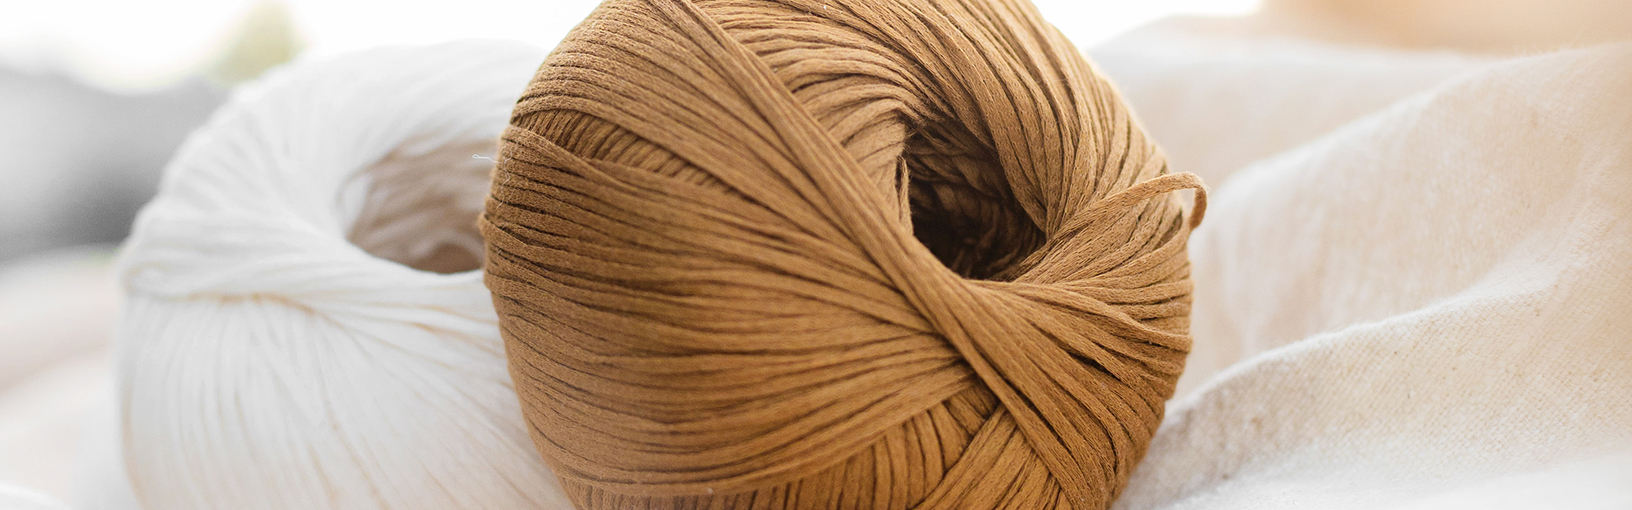 High quality yarns for knitting, crocheting & felting Lana Grossa Yarns | Big & Easy